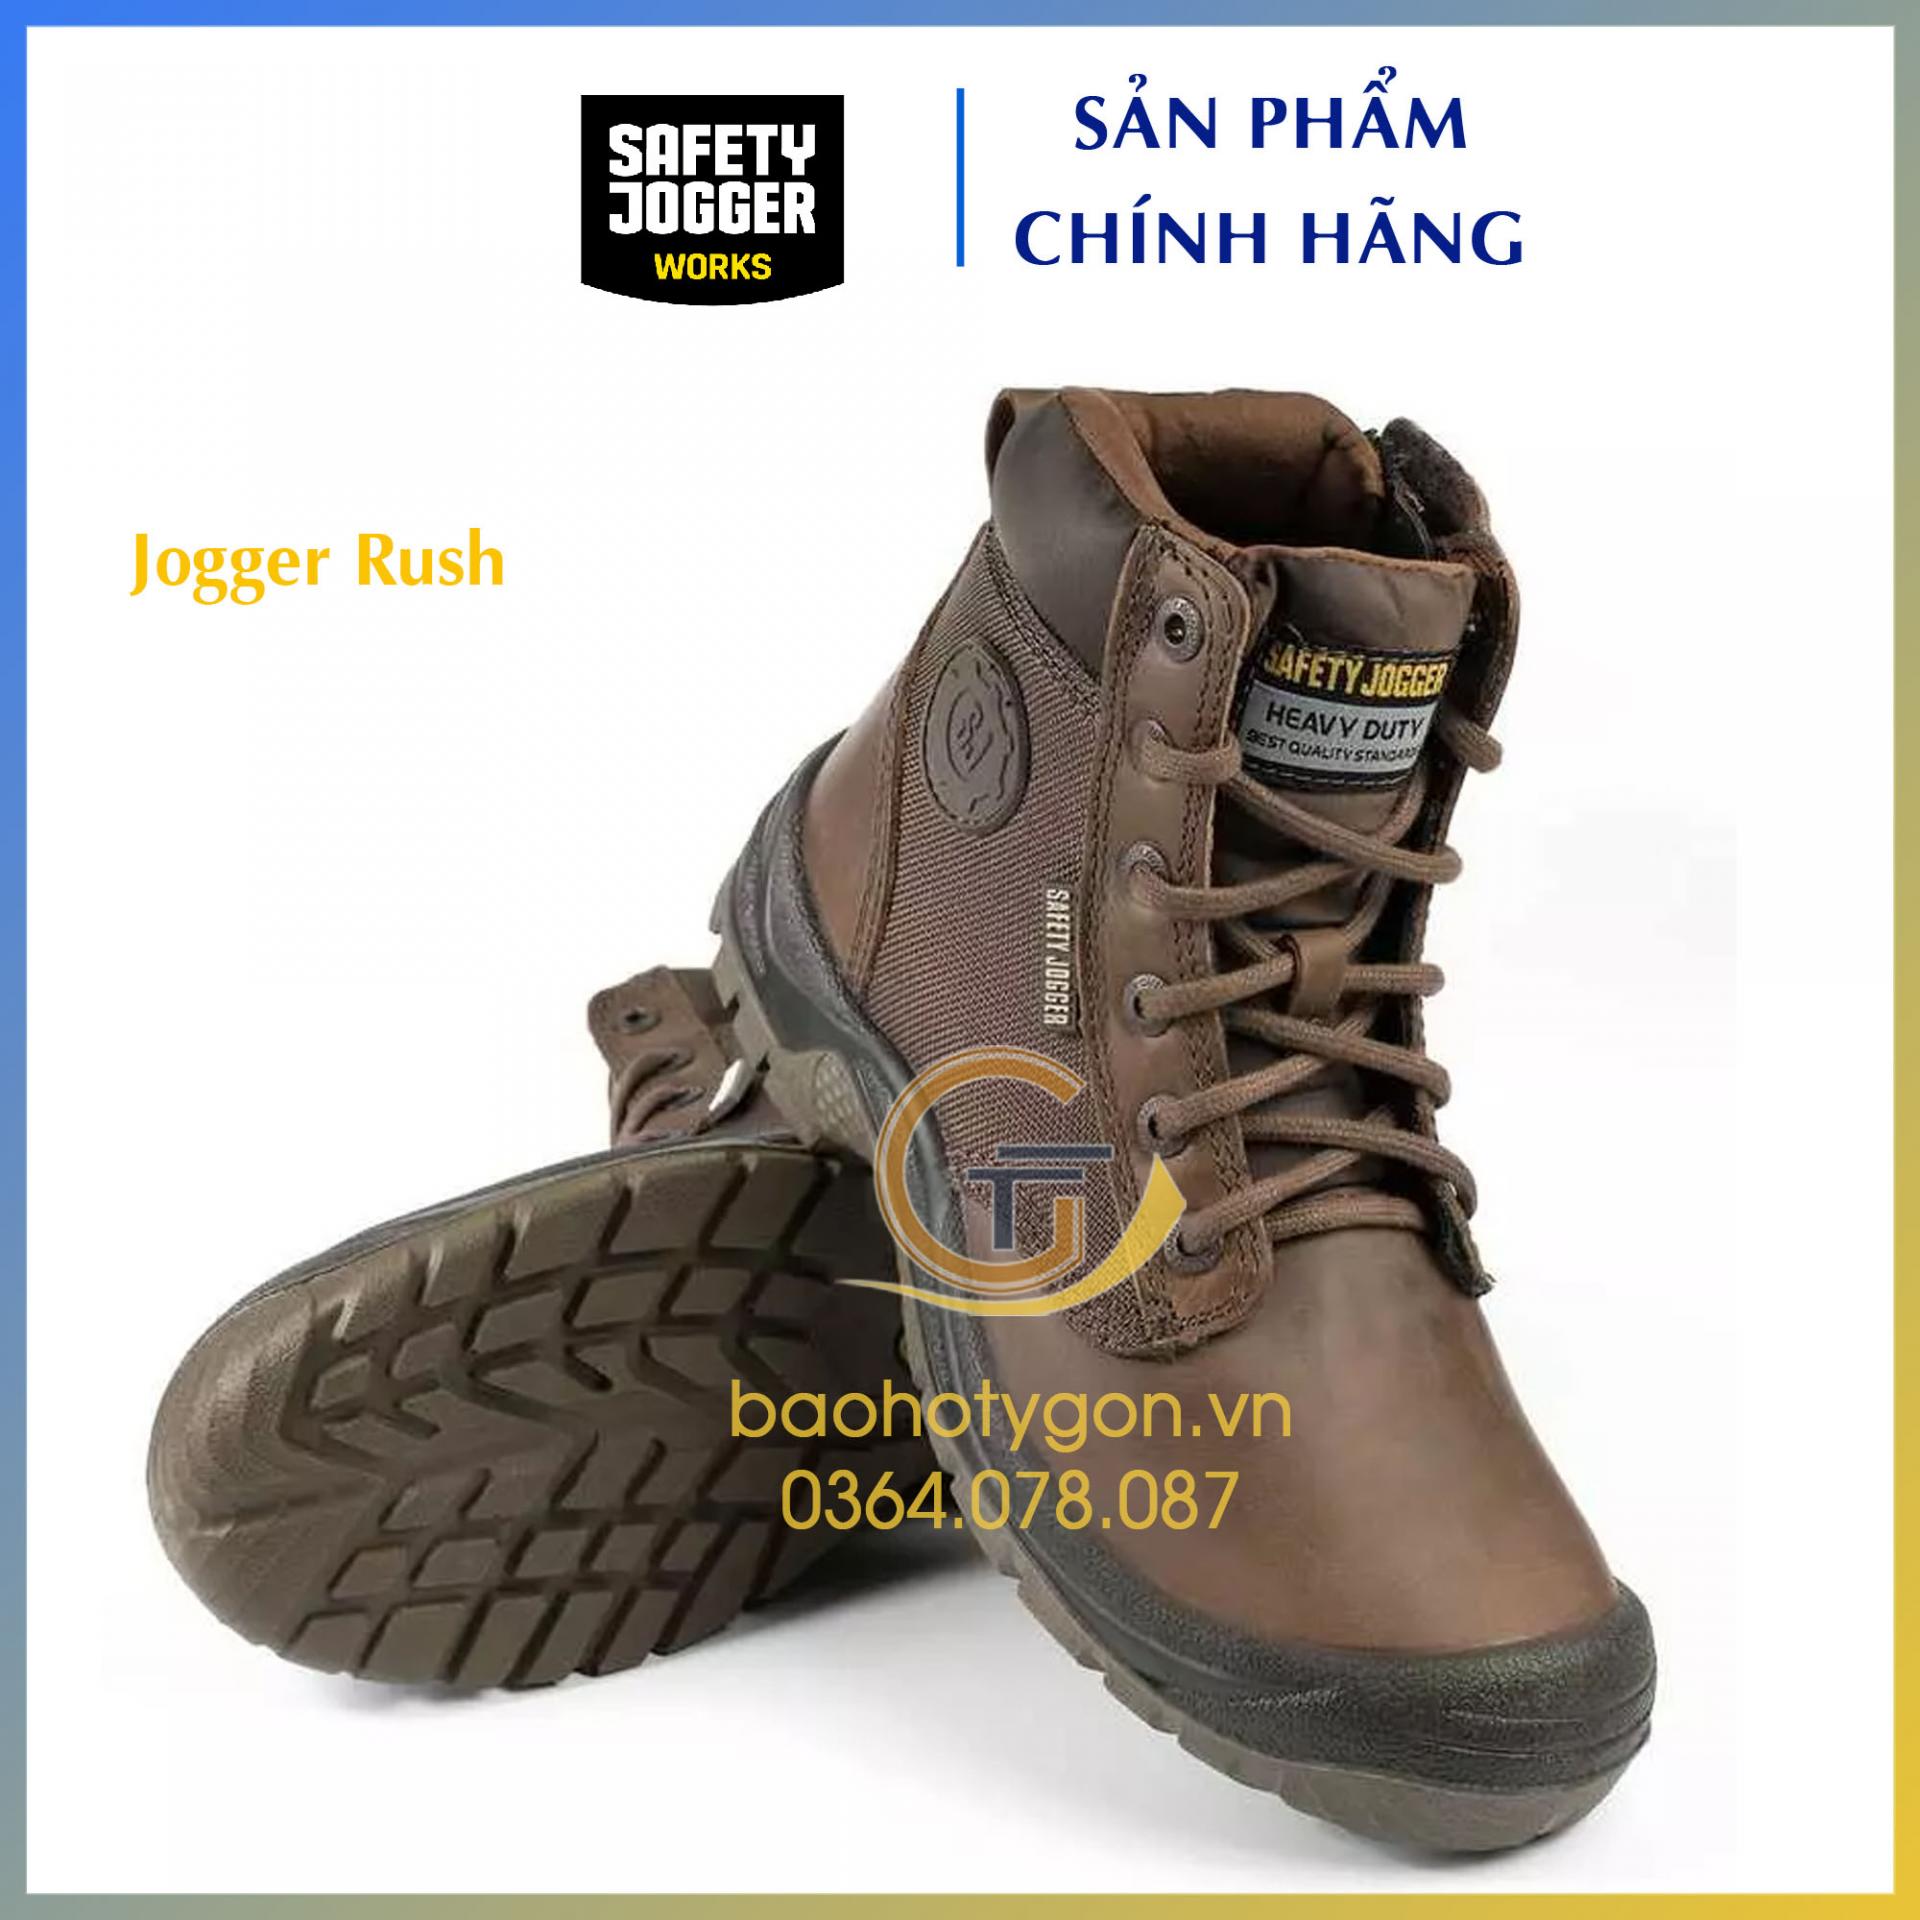 Giày bảo hộ lao động có khóa kéo Jogger Rush - Bảo Hộ Lao Động Ty Gôn - Công ty TNHH An Toàn Lao Động Ty Gôn